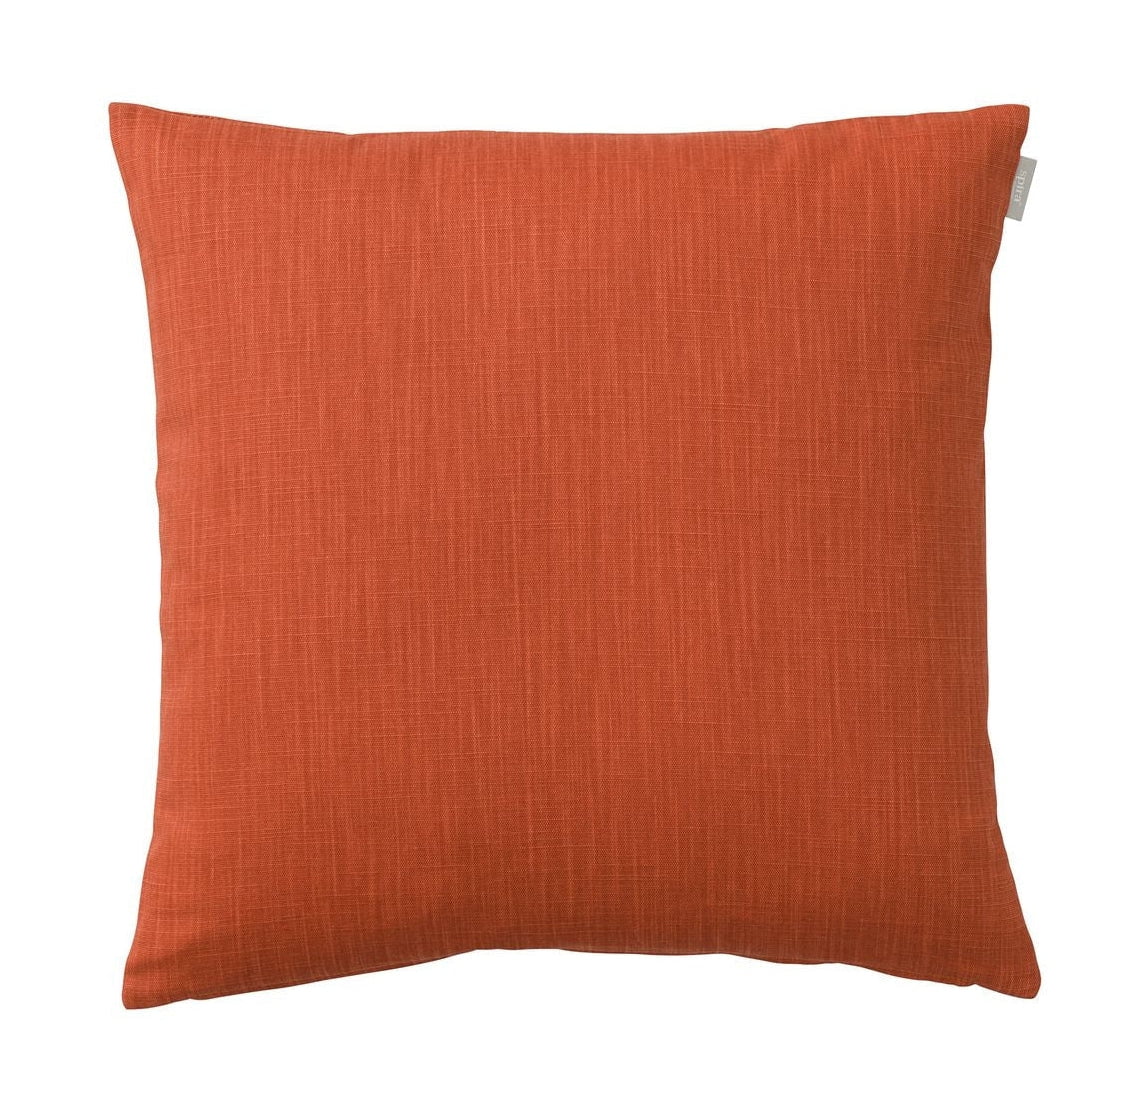 Spira Slät 60 I Klotz Cushion Cover, Terracotta